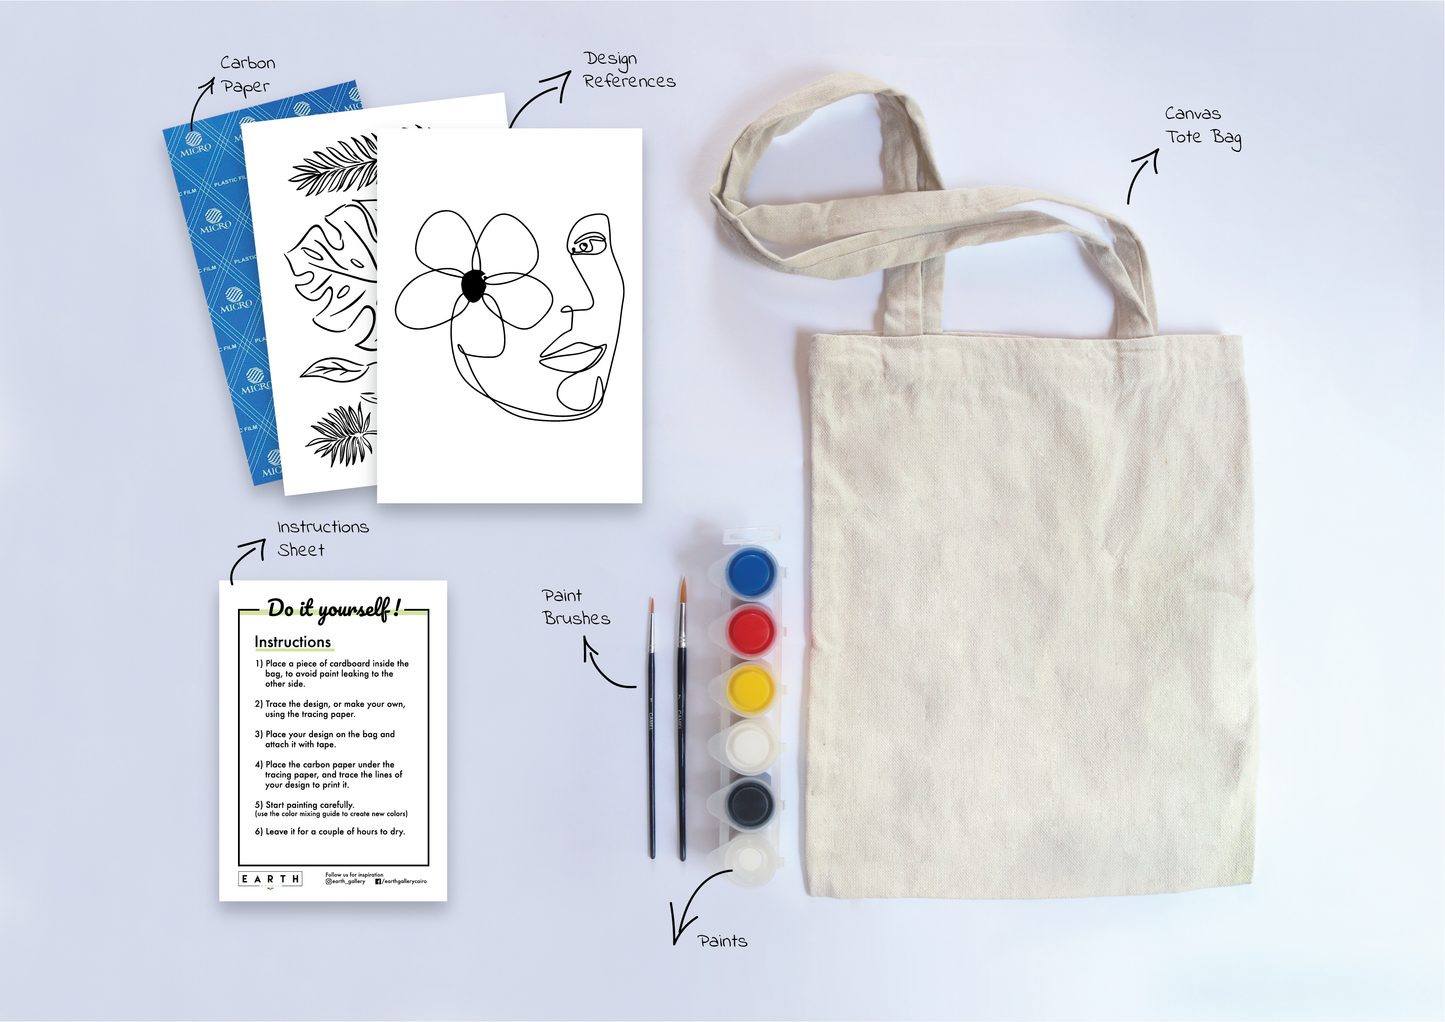 Tote Bag DIY Kit